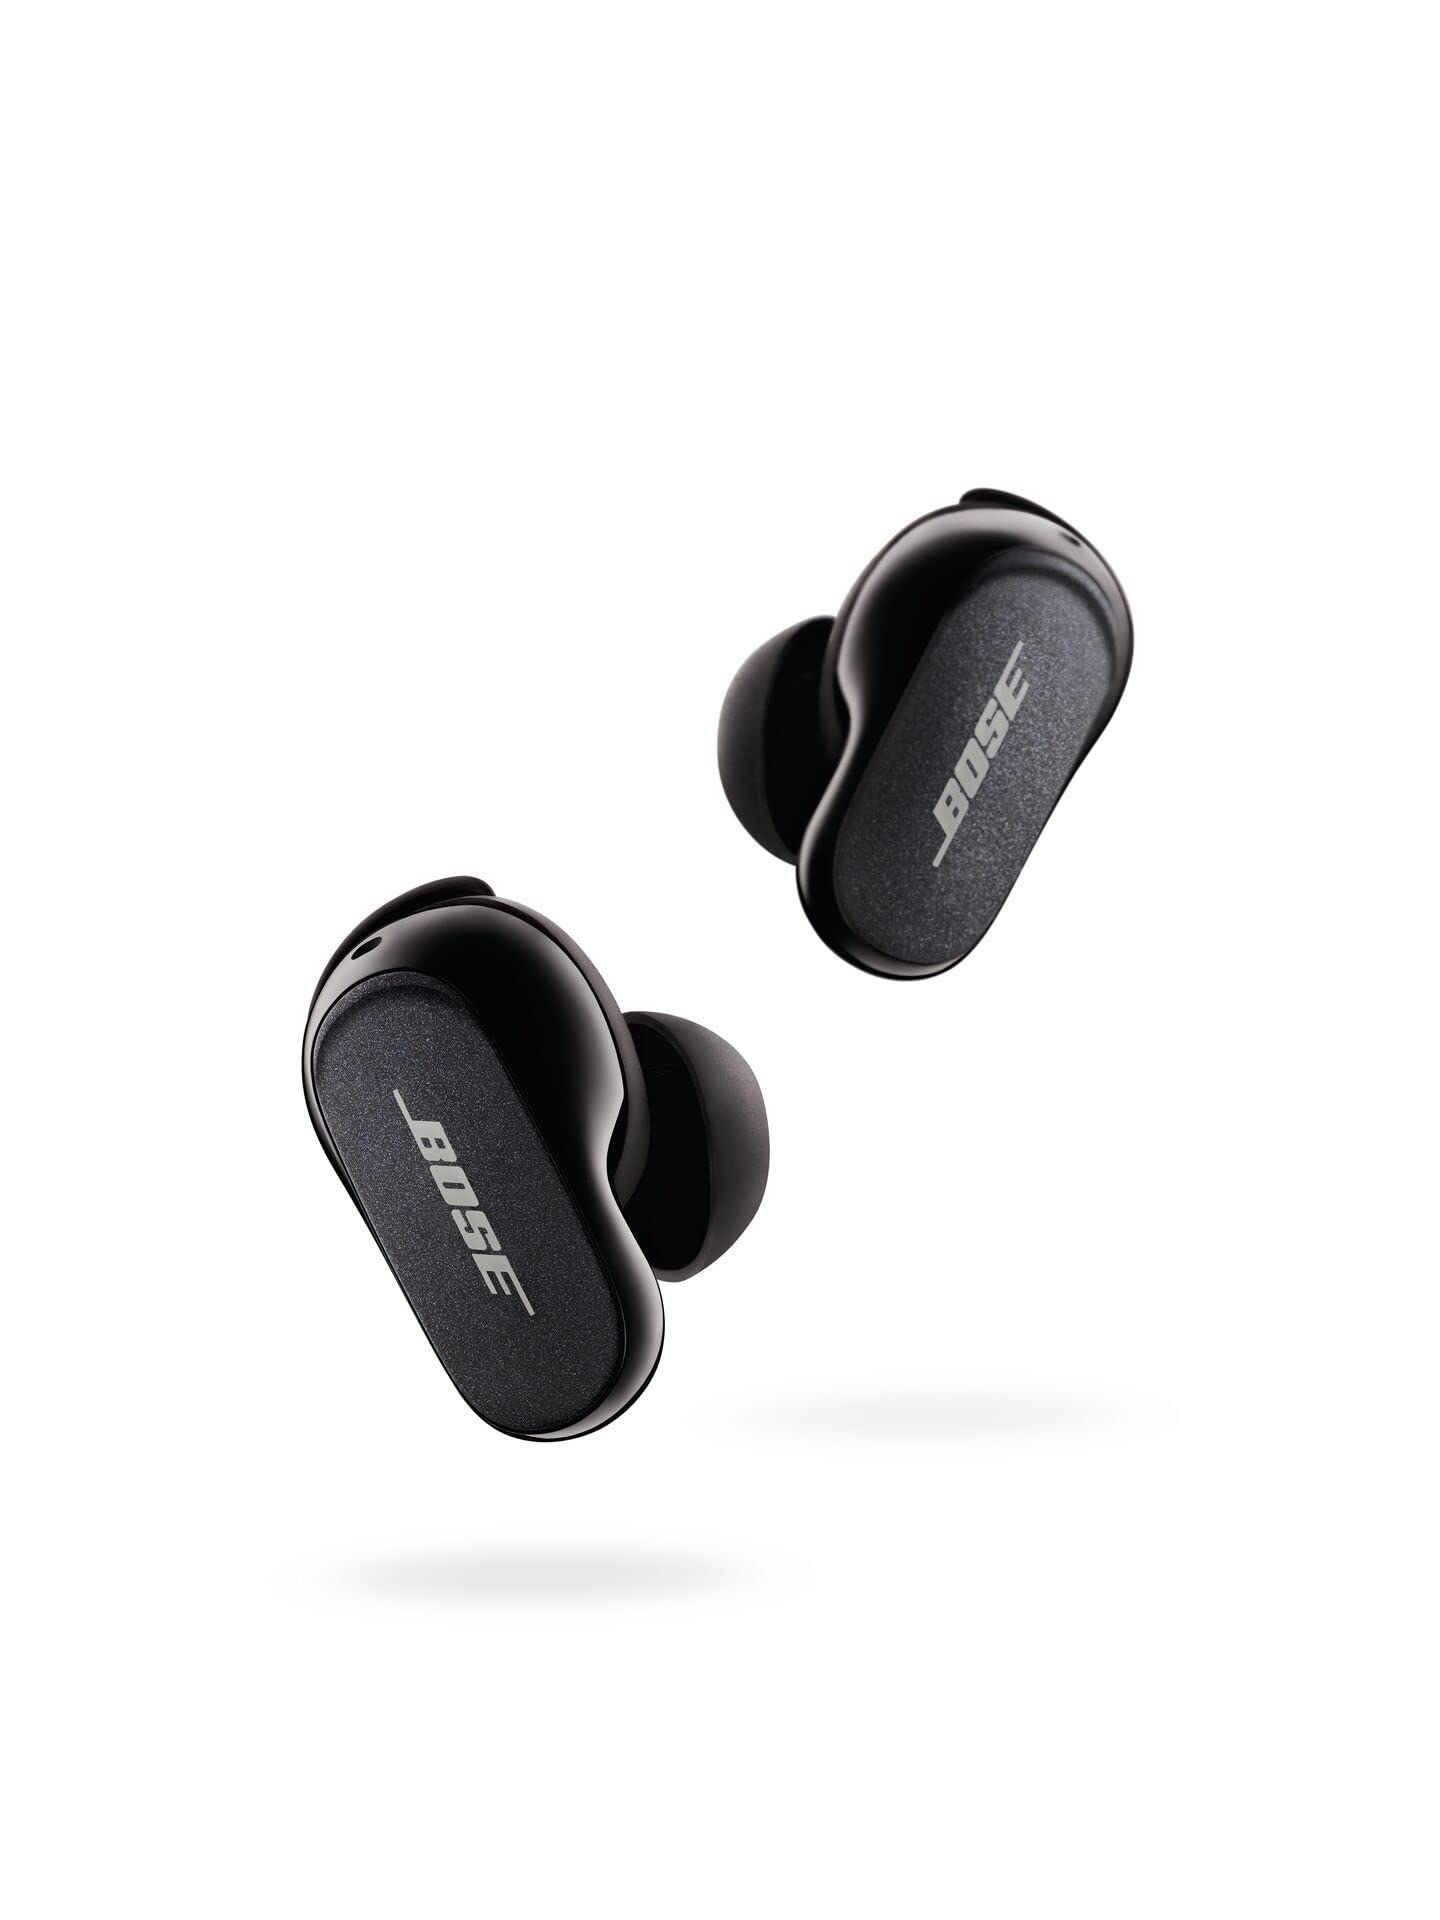 BOSE 全新 QuietComfort 耳塞 II，无线，蓝牙，世界上最好的降噪入耳式耳机，具有个性化降噪和...